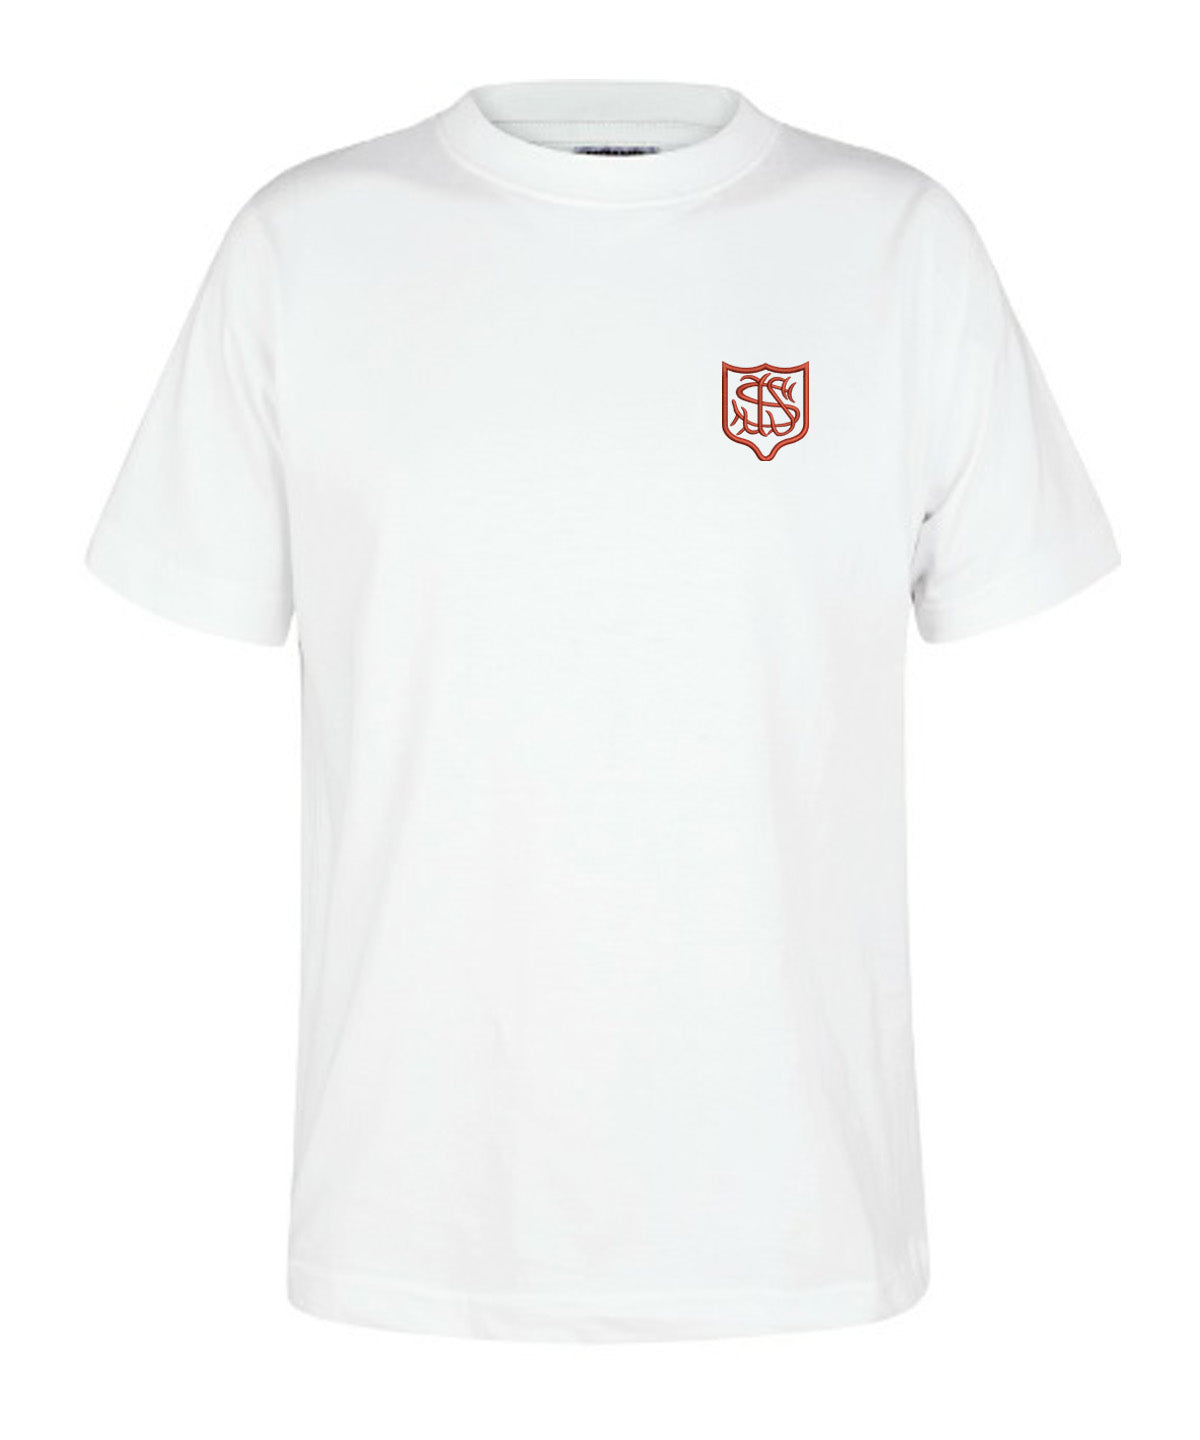 St Joseph's Primary School Linlithgow - Unisex Cotton T Shirt - White - School Uniform Shop